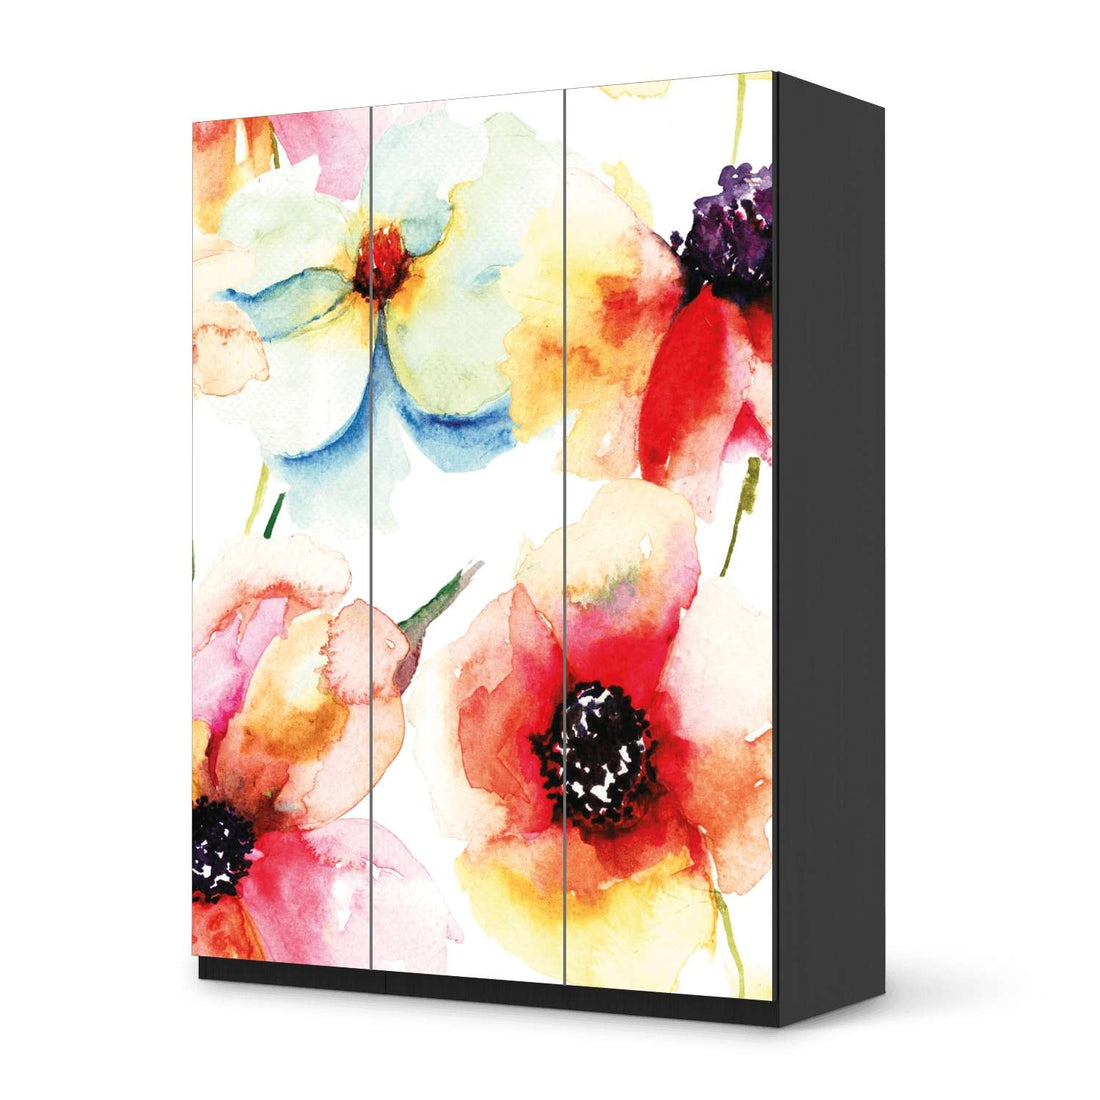 Folie für Möbel Water Color Flowers - IKEA Pax Schrank 201 cm Höhe - 3 Türen - schwarz